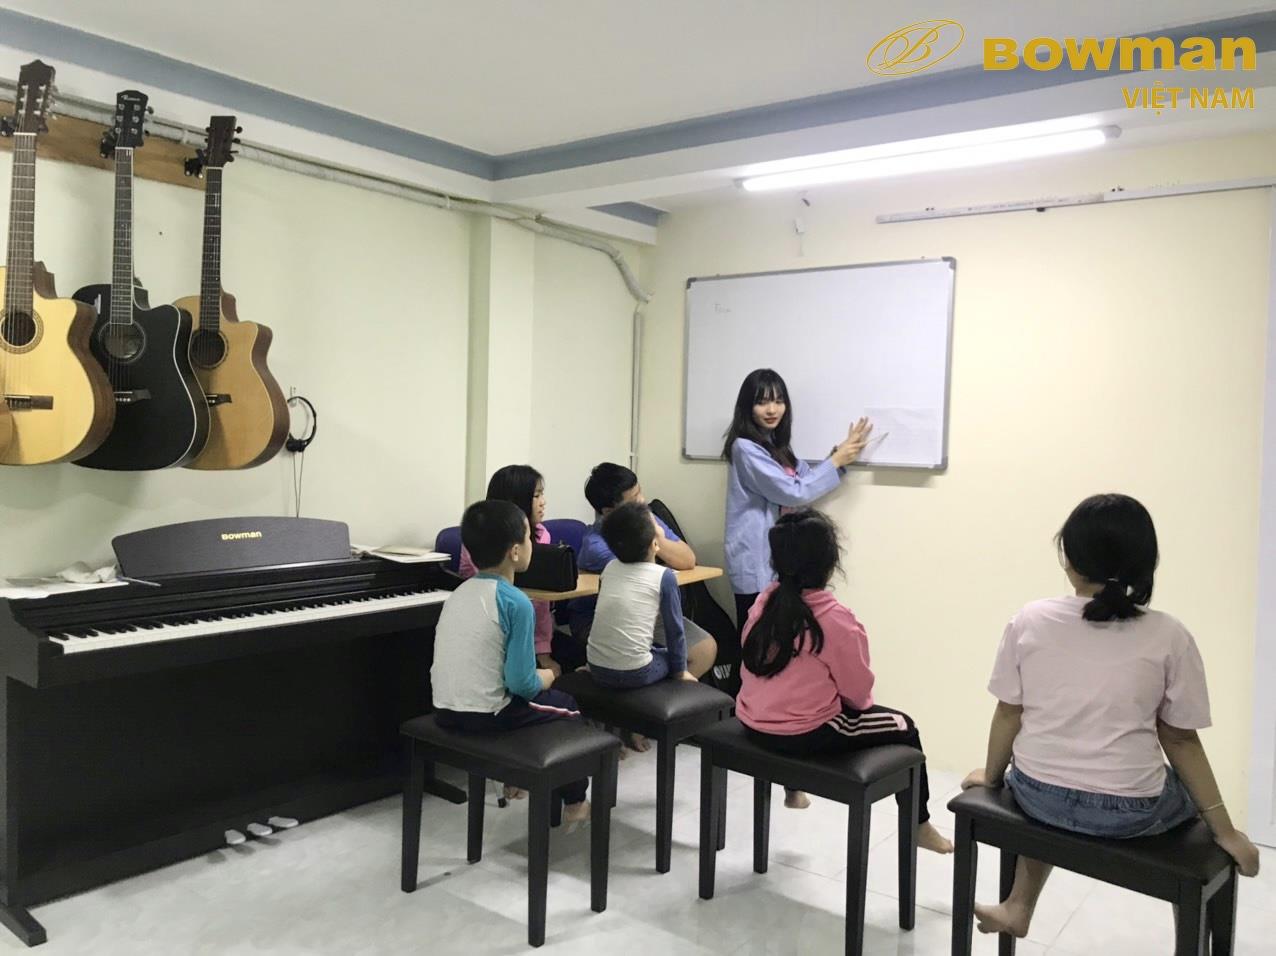 ​Hôm nay là buổi học đầu tiên - Bowman PIANO Việt Nam - BowmanPIANO.com.vn